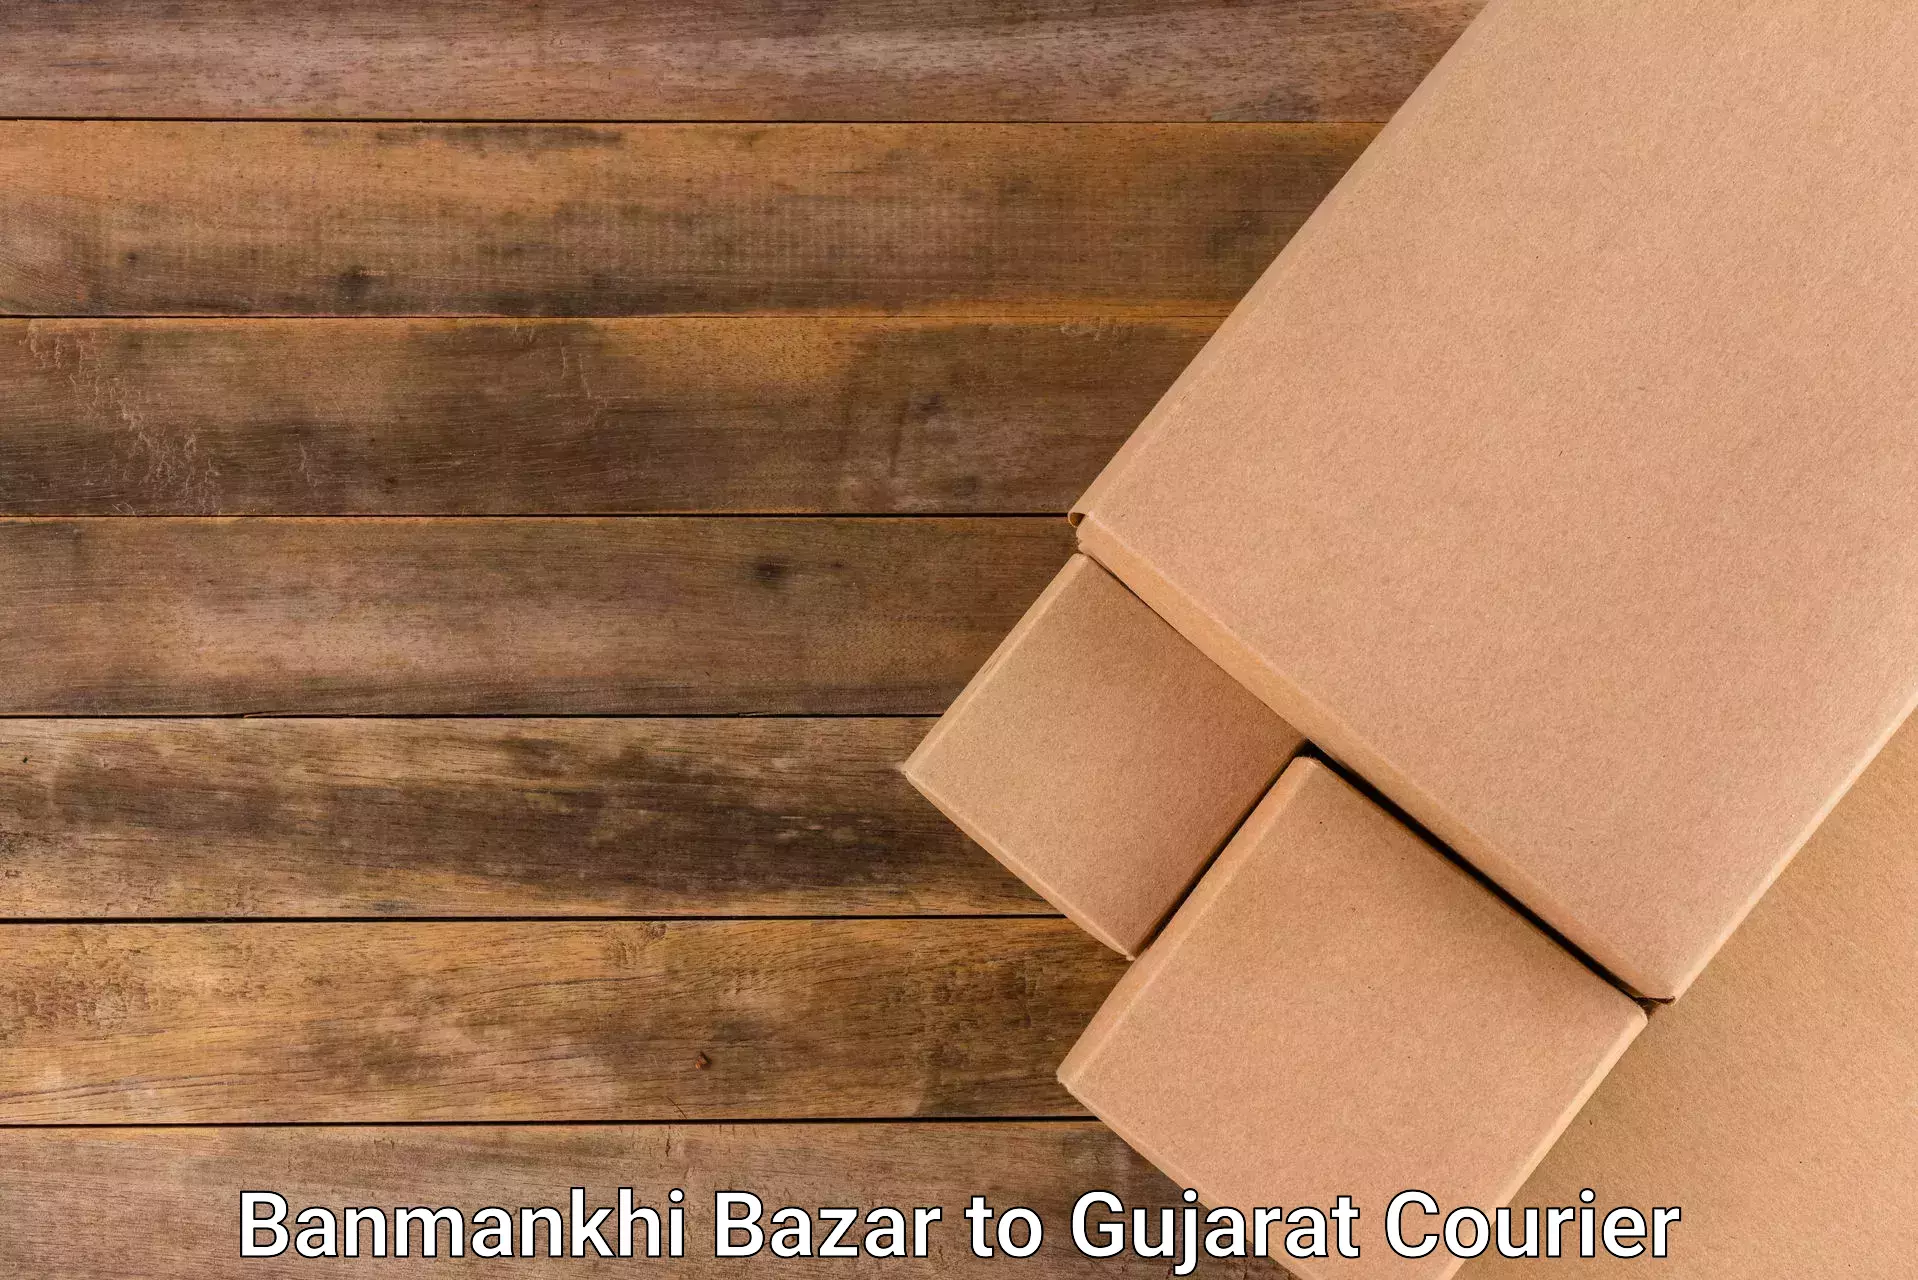 Customer-oriented courier services Banmankhi Bazar to Modasa